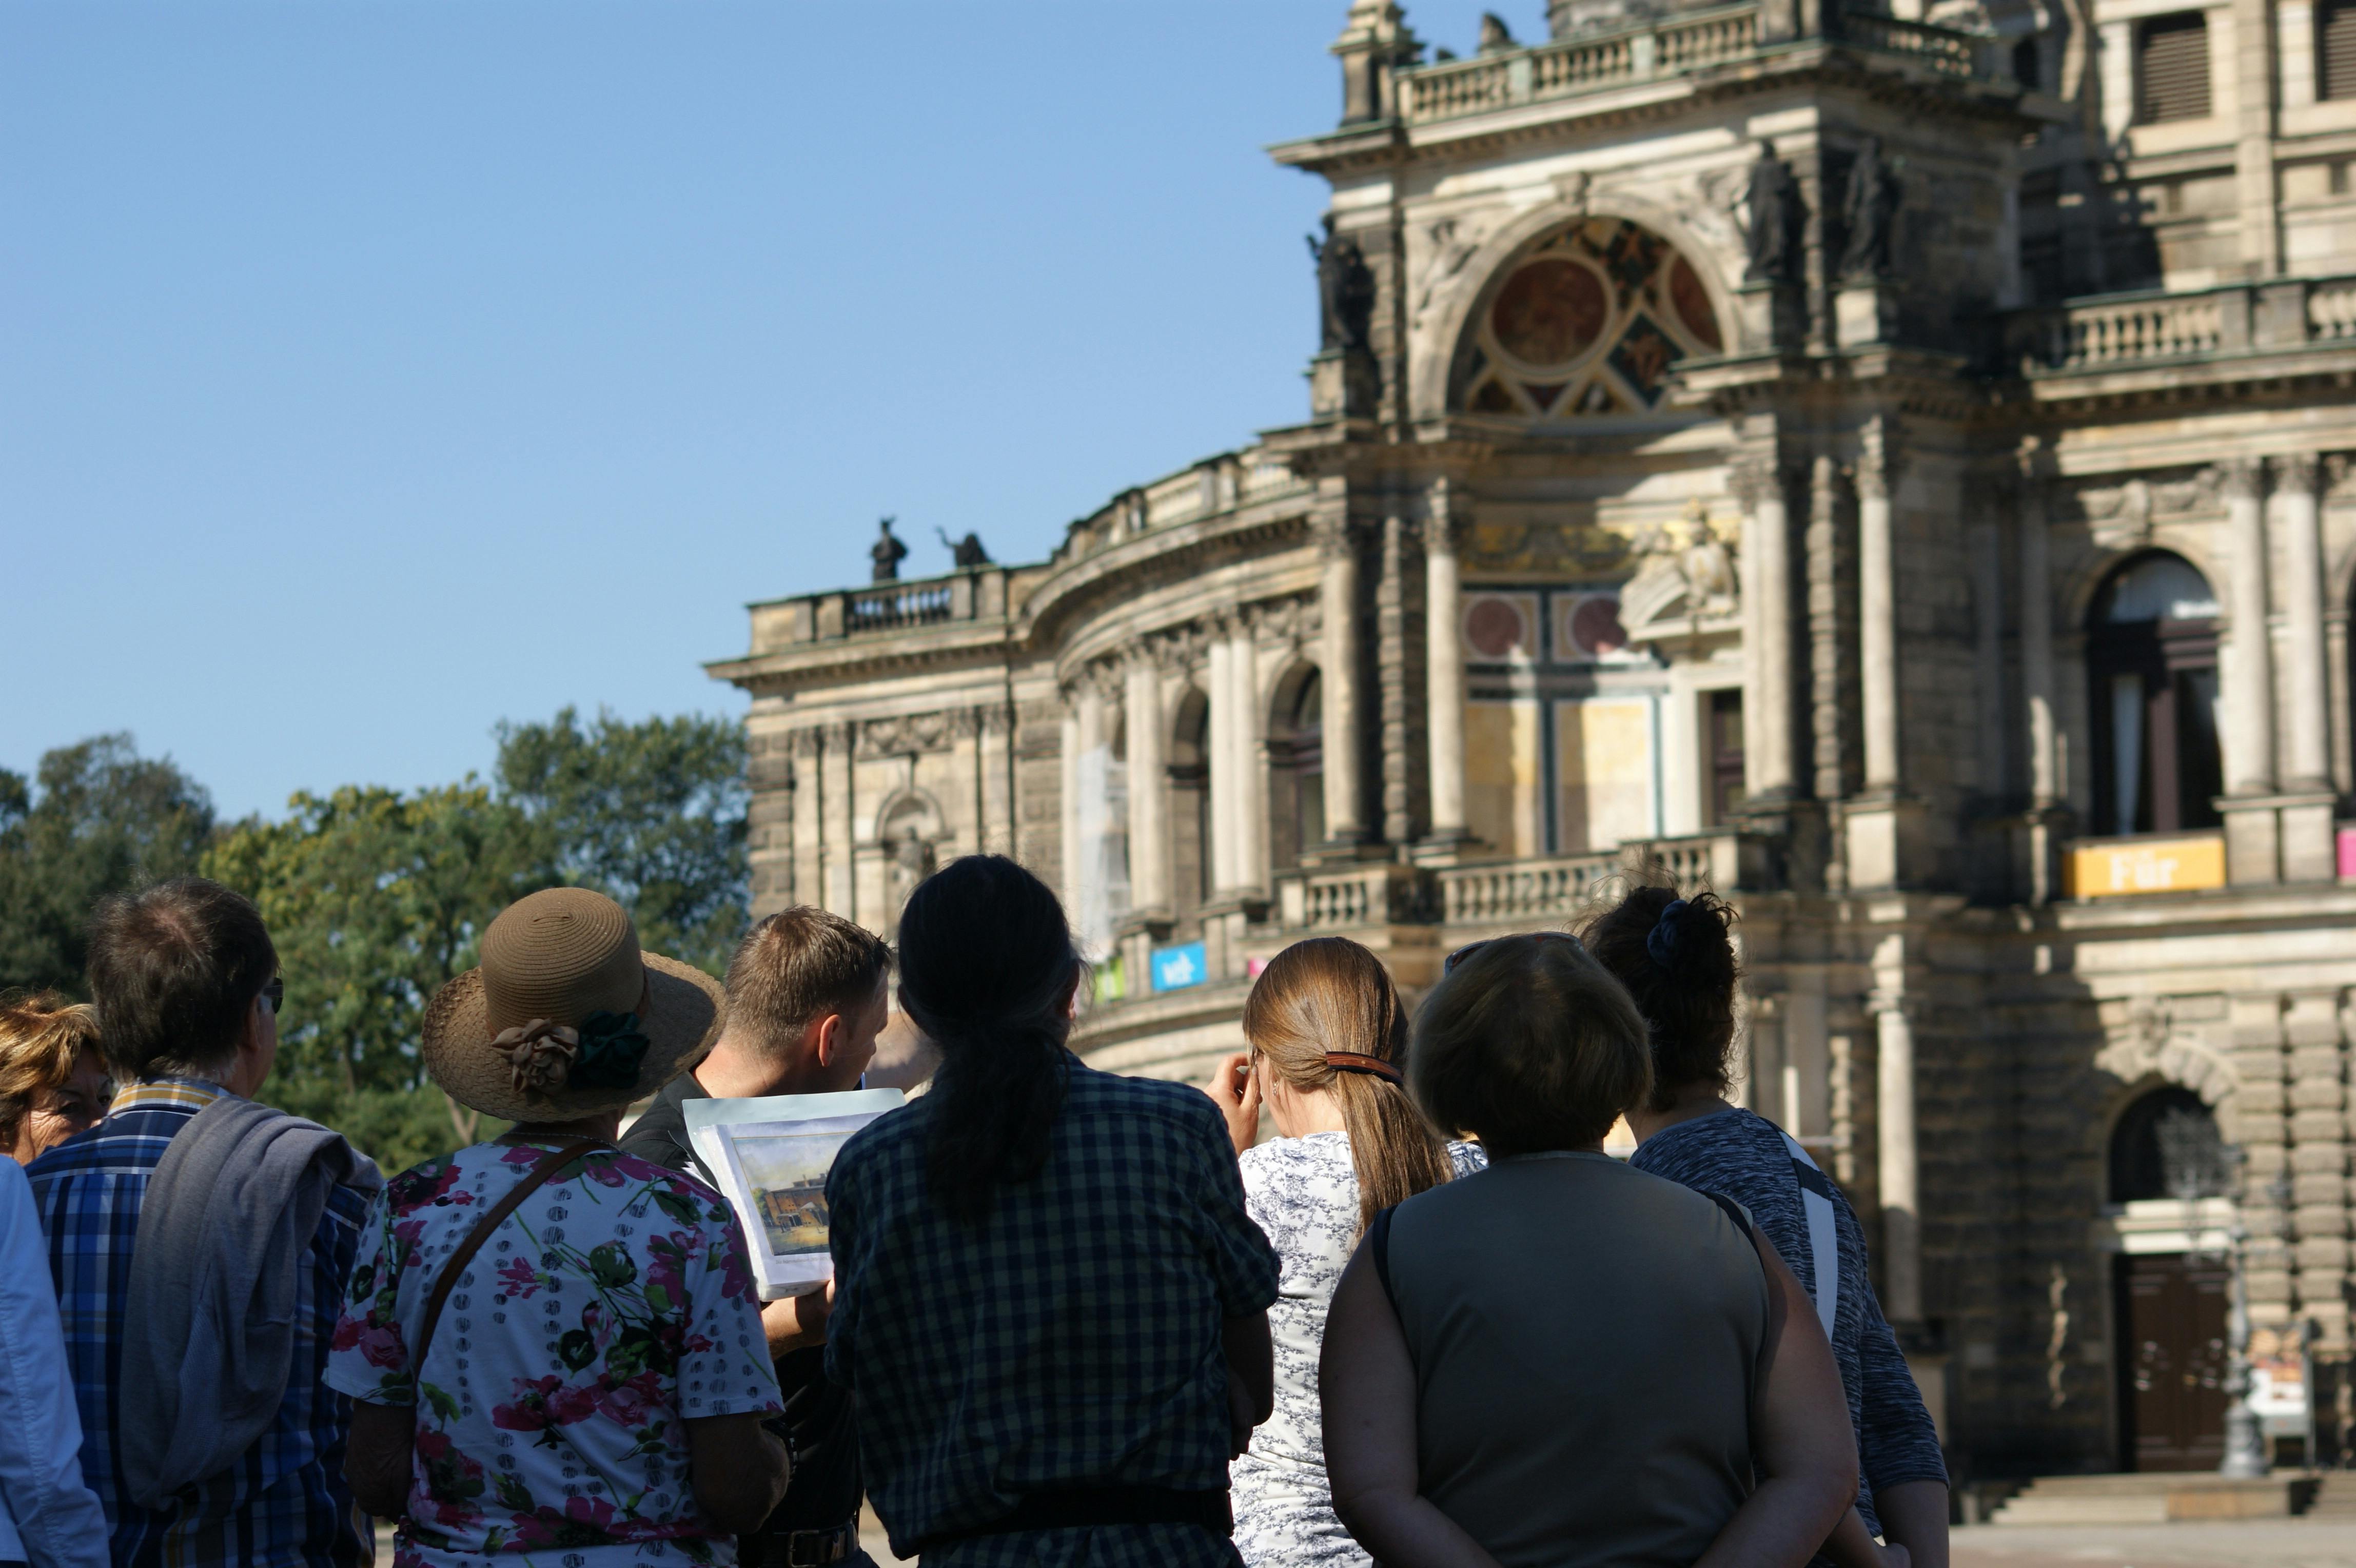 Stadtrundgang durch Dresdens historische Altstadt (9).JPG